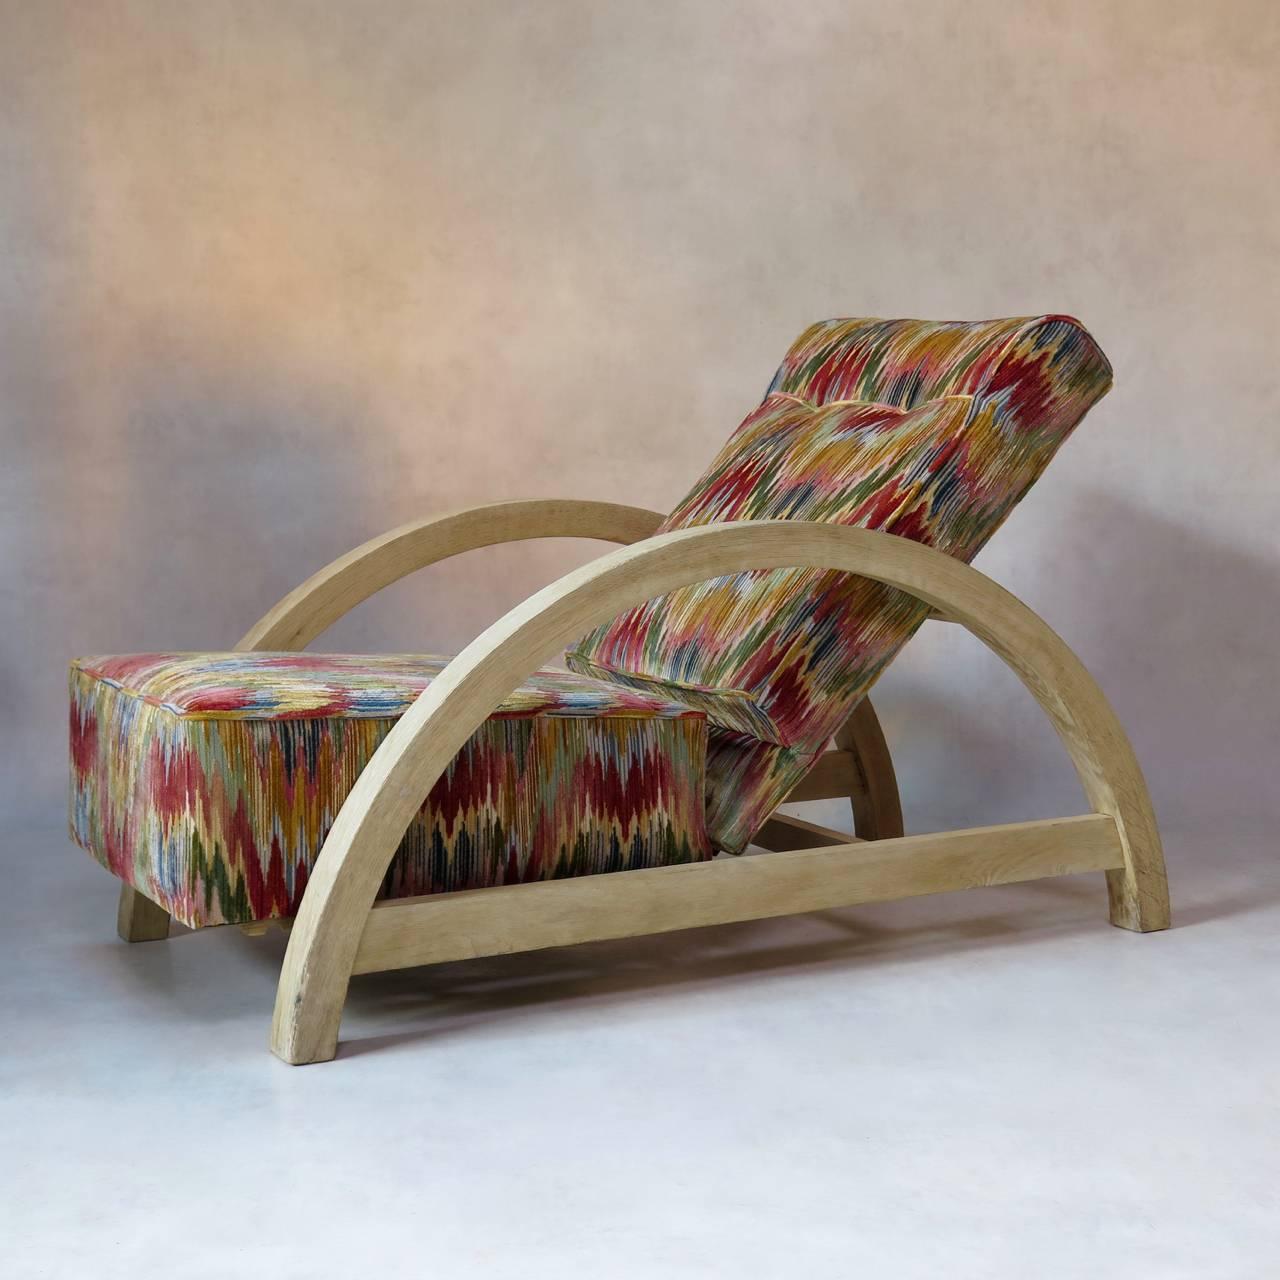 Großer und bequemer Sessel aus der Zeit des Art déco mit ungewöhnlichem Design. Die Struktur hat eine große und stromlinienförmige Bogenform und ist aus gebürsteter Eiche.
Sitz und Rückenlehne wurden neu mit einem Ikat-ähnlichen Vintage-Samtstoff